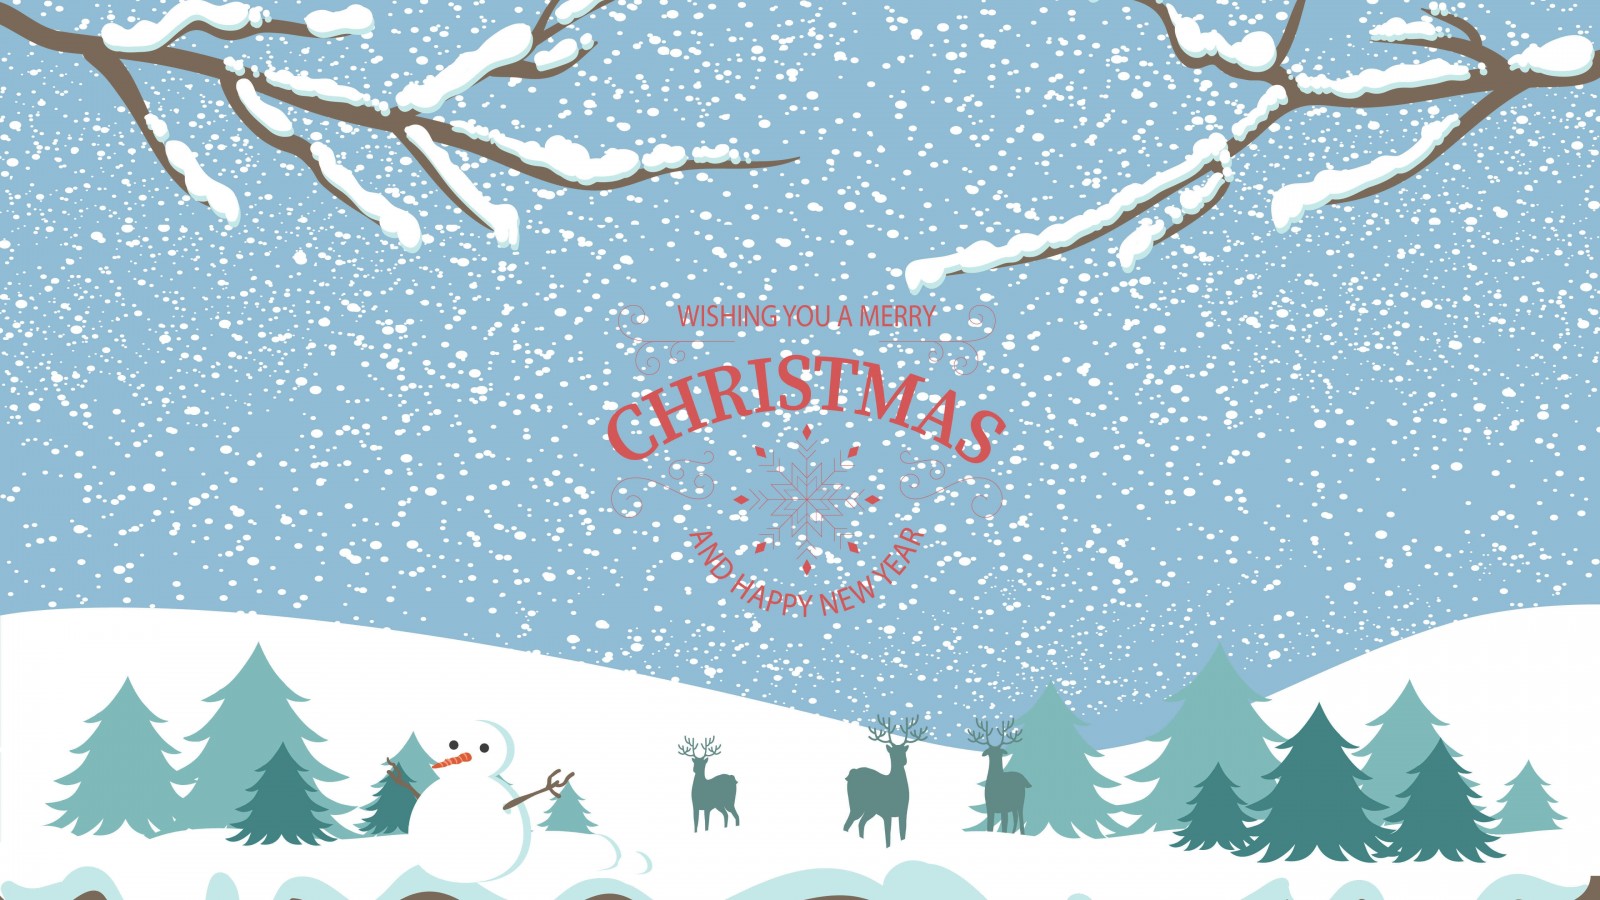 Merry Christmas Illustration Wallpaper for Desktop 1600x900